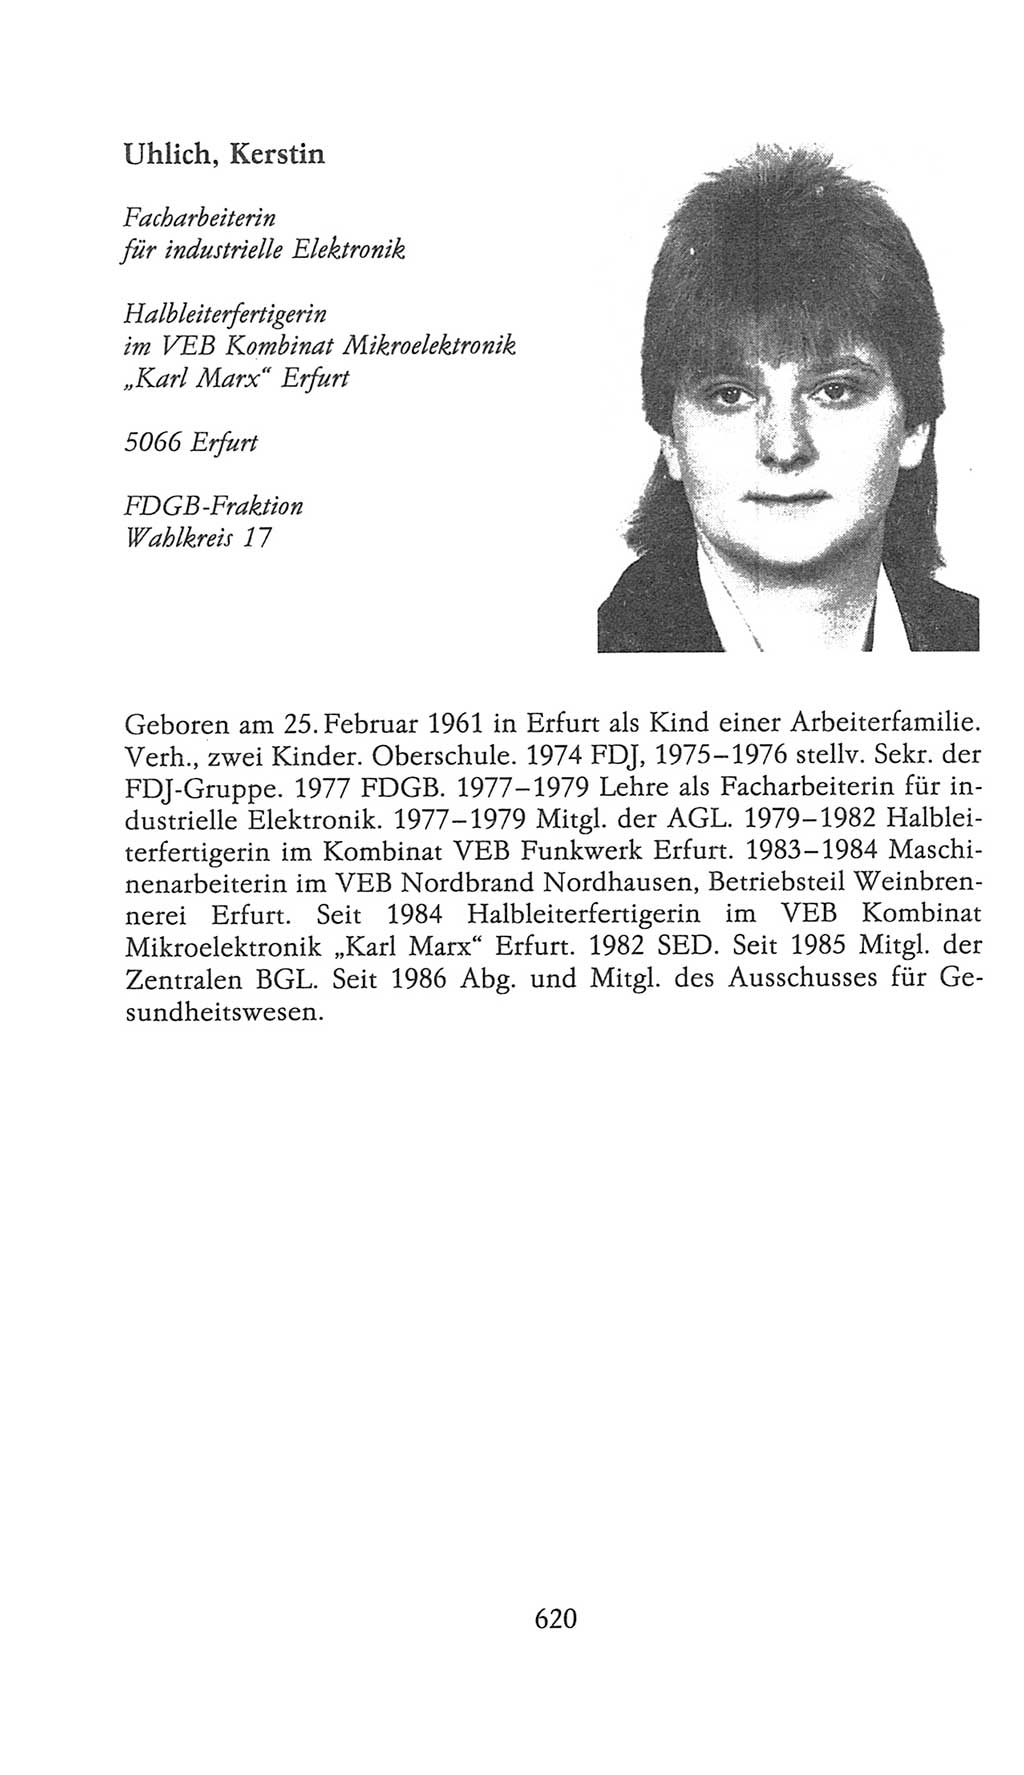 Volkskammer (VK) der Deutschen Demokratischen Republik (DDR), 9. Wahlperiode 1986-1990, Seite 620 (VK. DDR 9. WP. 1986-1990, S. 620)